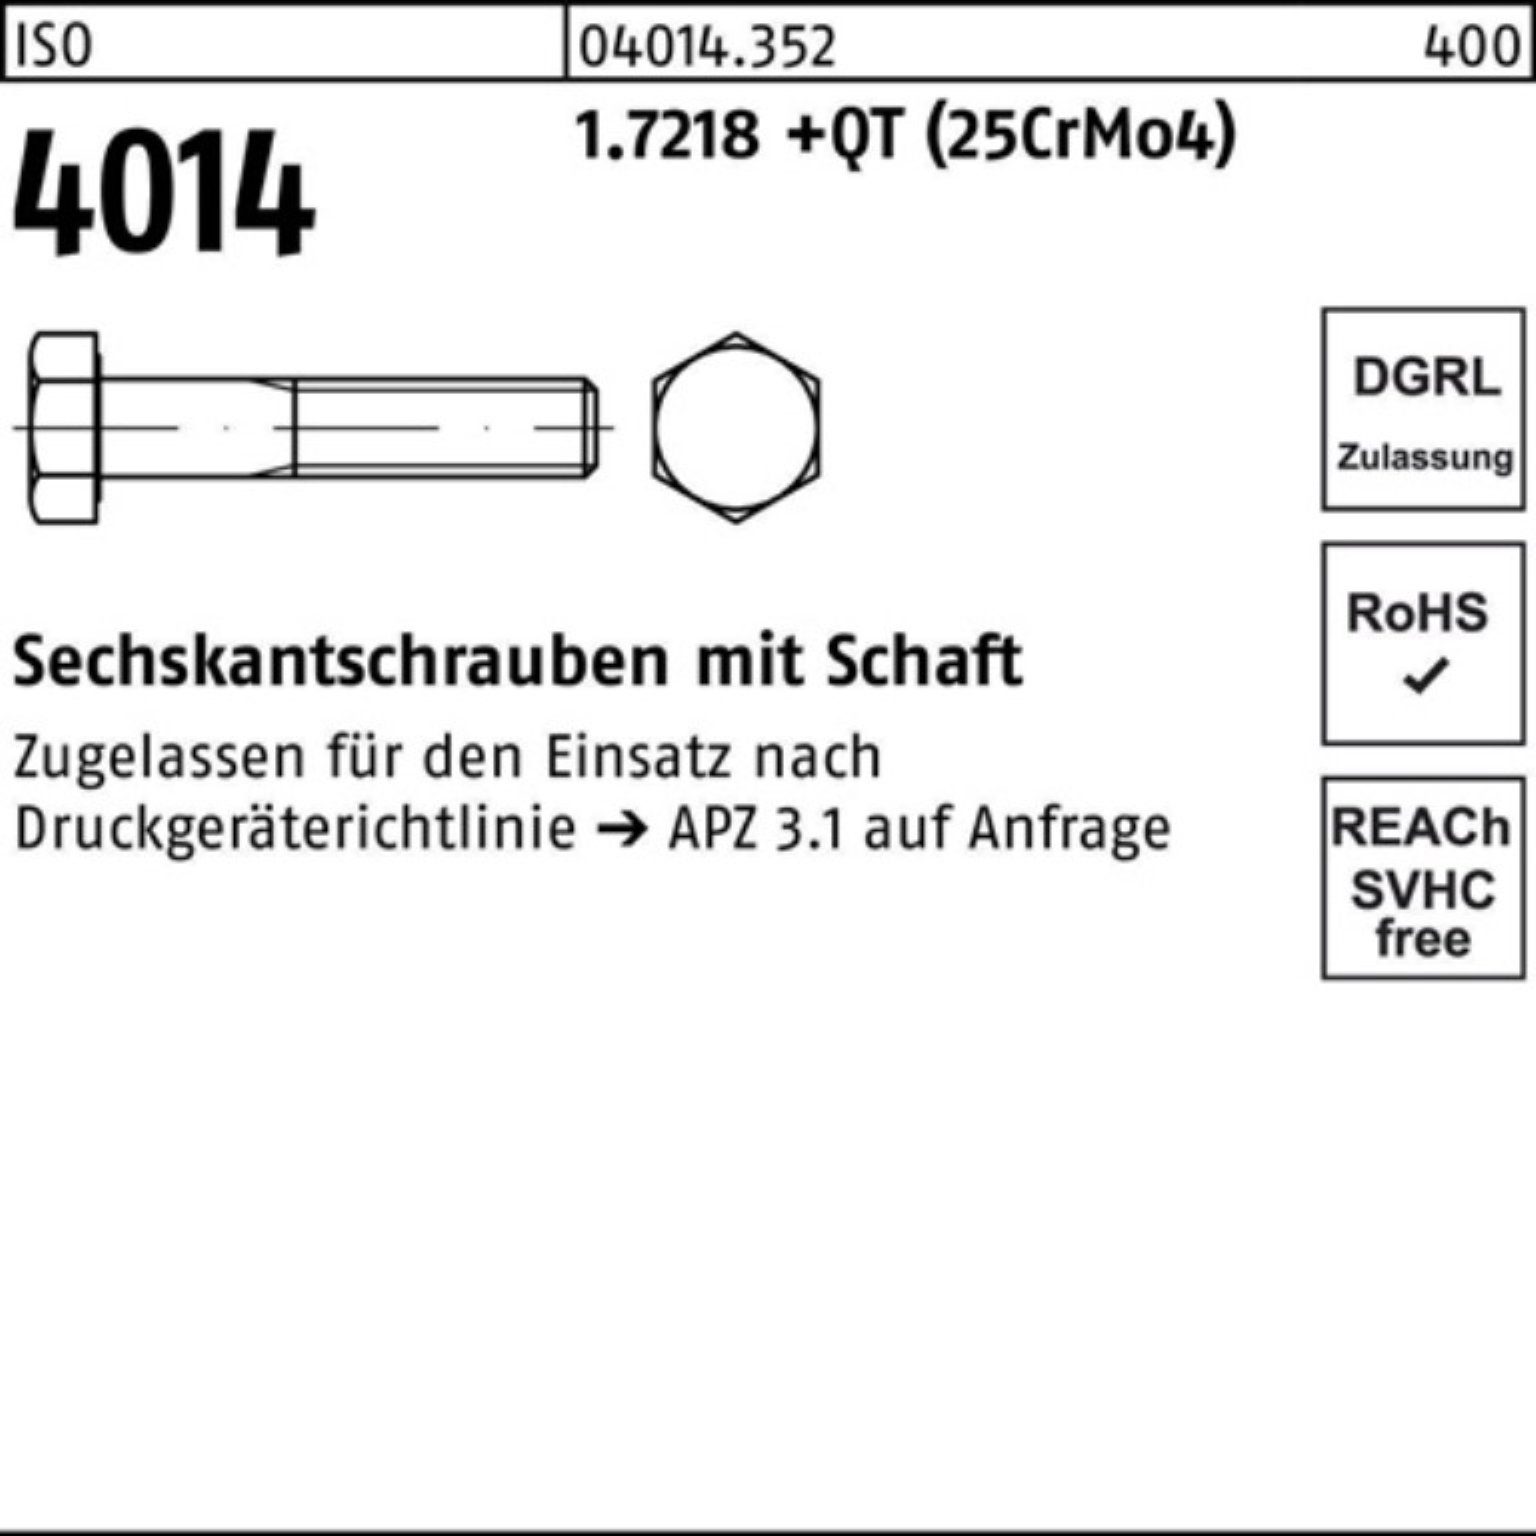 Schaft 190 Sechskantschraube Pack Sechskantschraube 1.7218 Bufab 4014 (25Cr +QT ISO 100er M33x